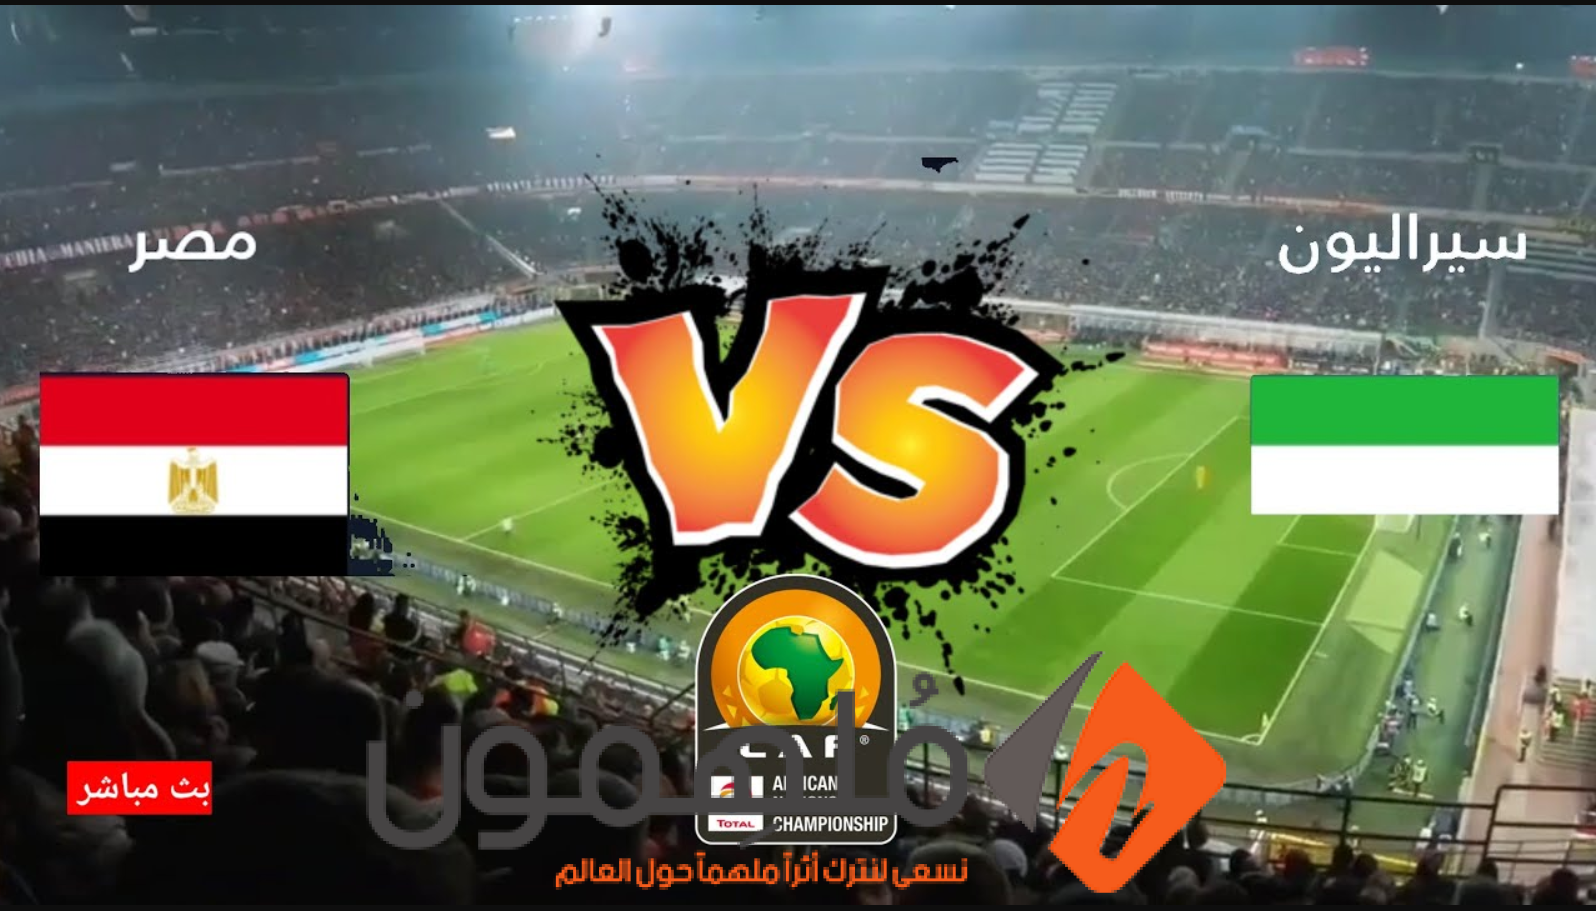 تشكيلة منتخب مصر امام سيراليون في تصفيات كأس العالم 2026 (التشكيلة الرسمية)